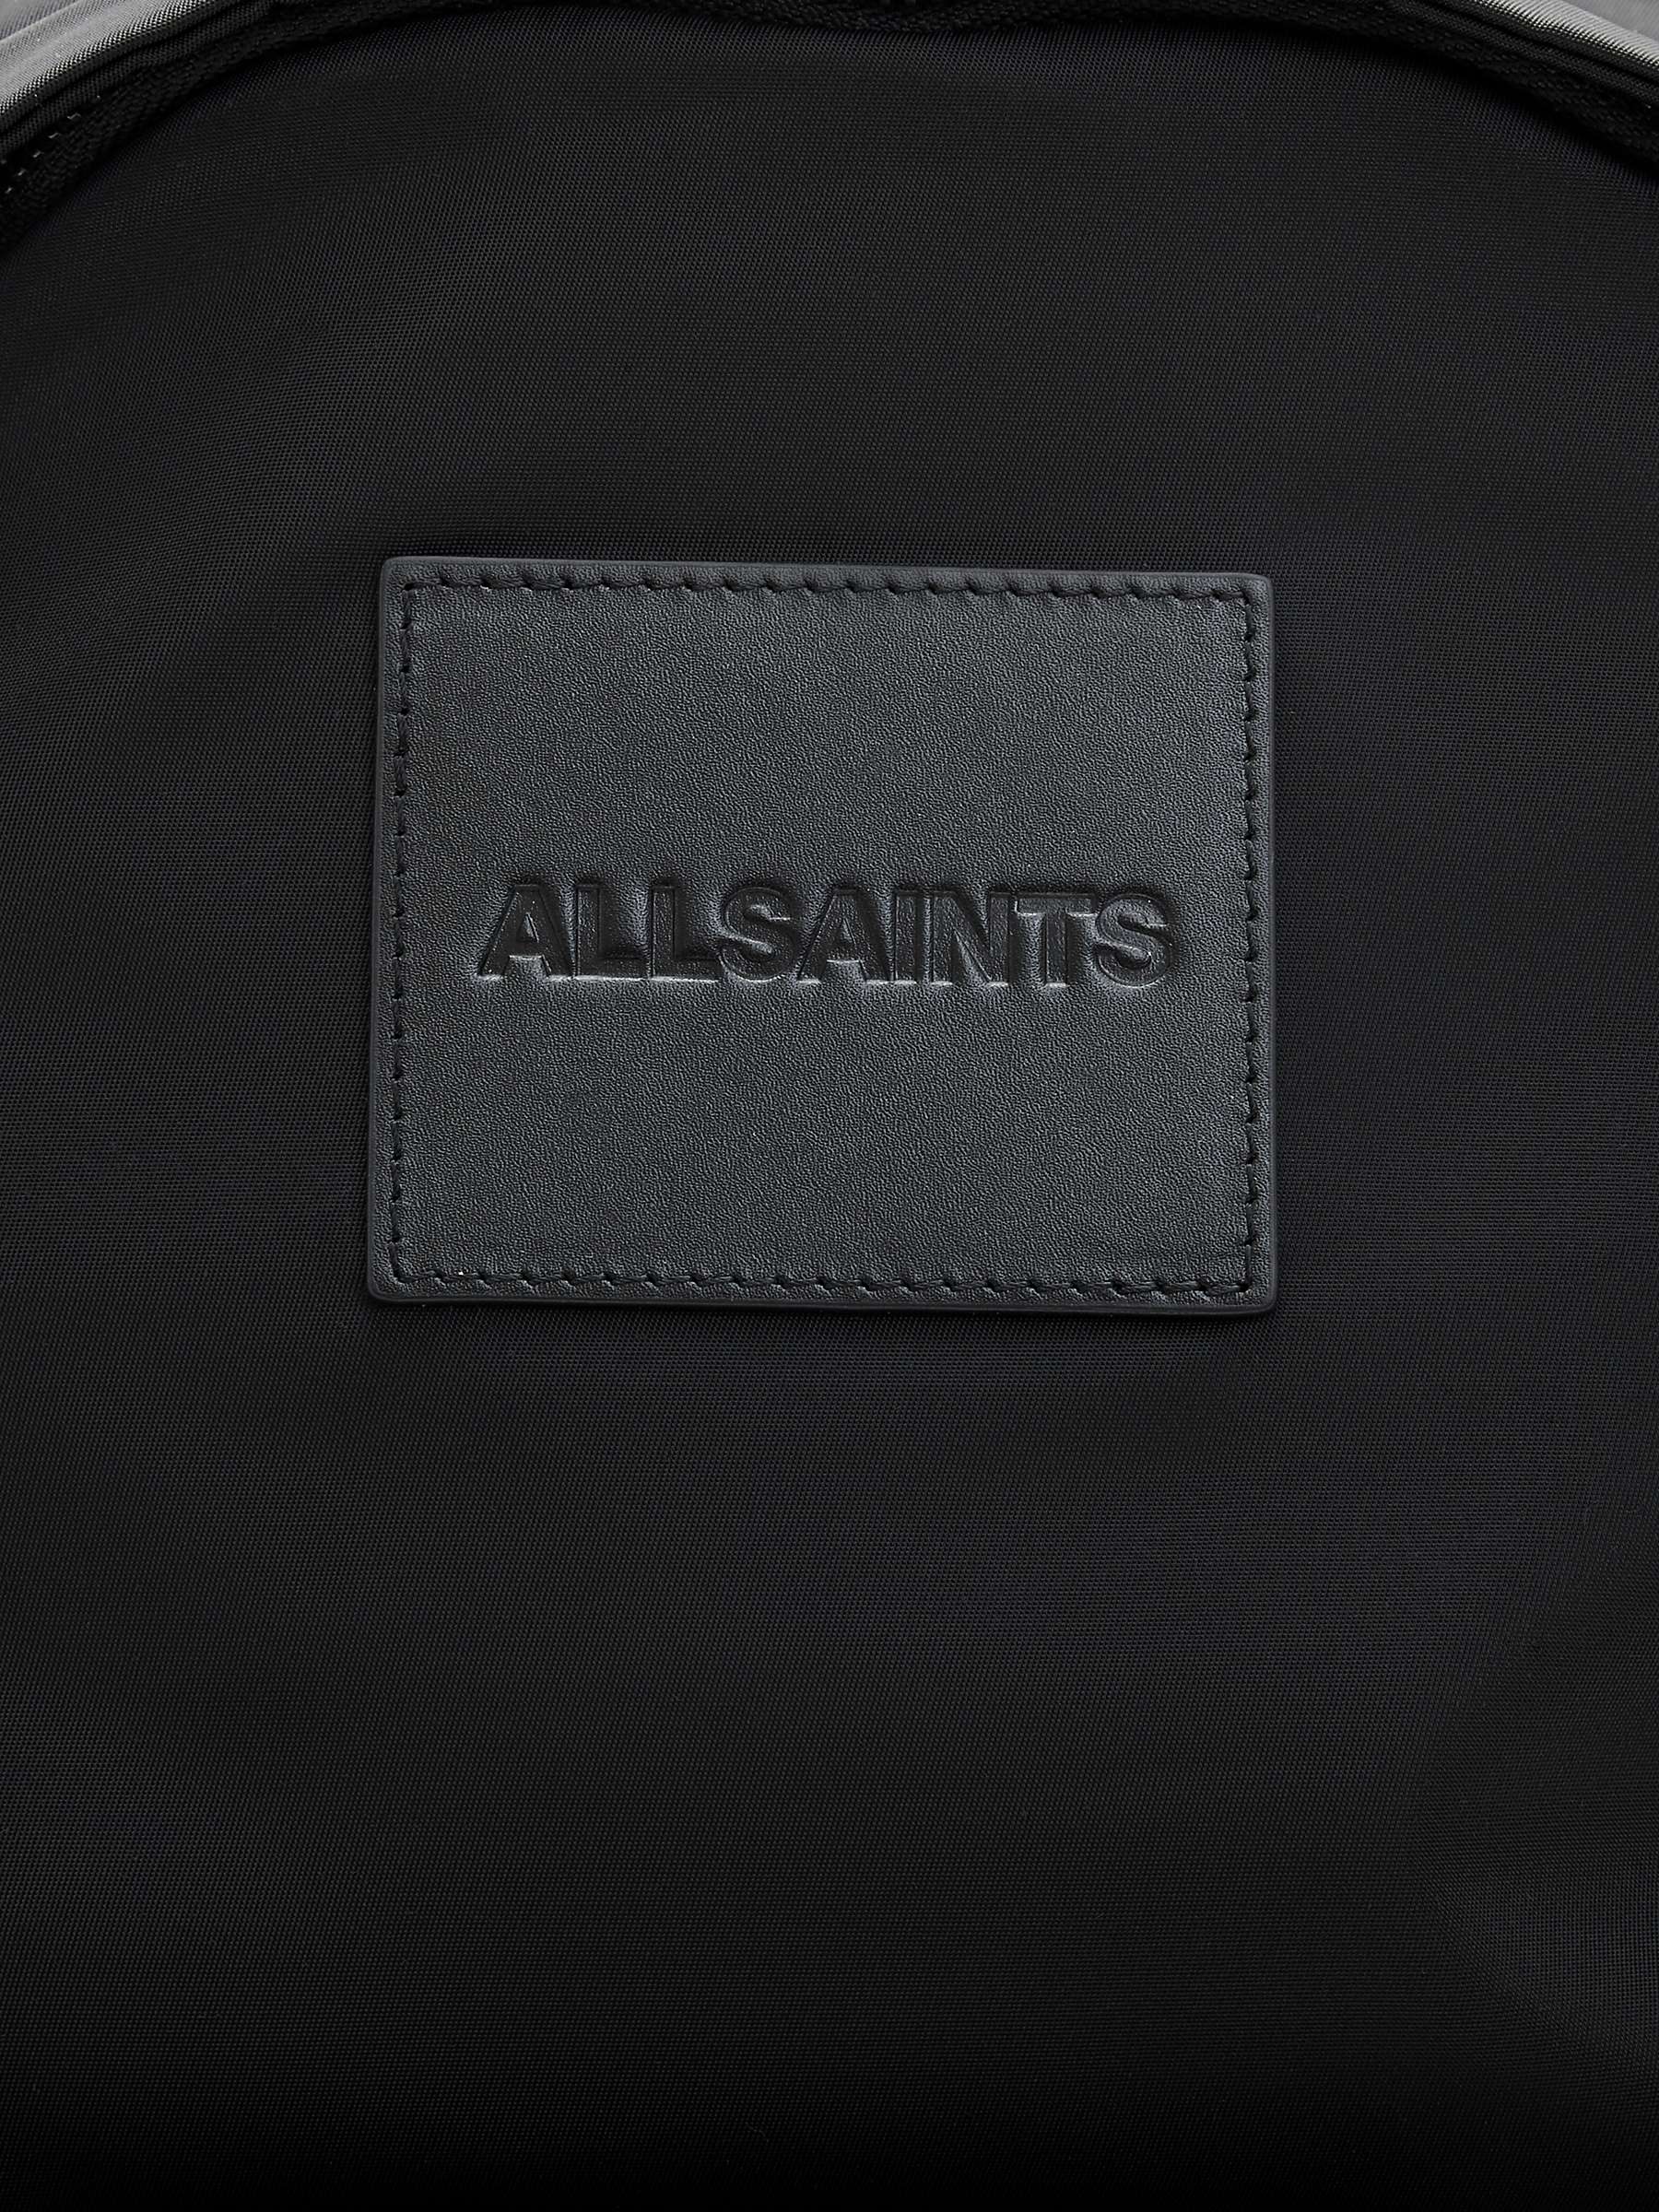 Buy AllSaints Carabiner Backpack, Black Online at johnlewis.com